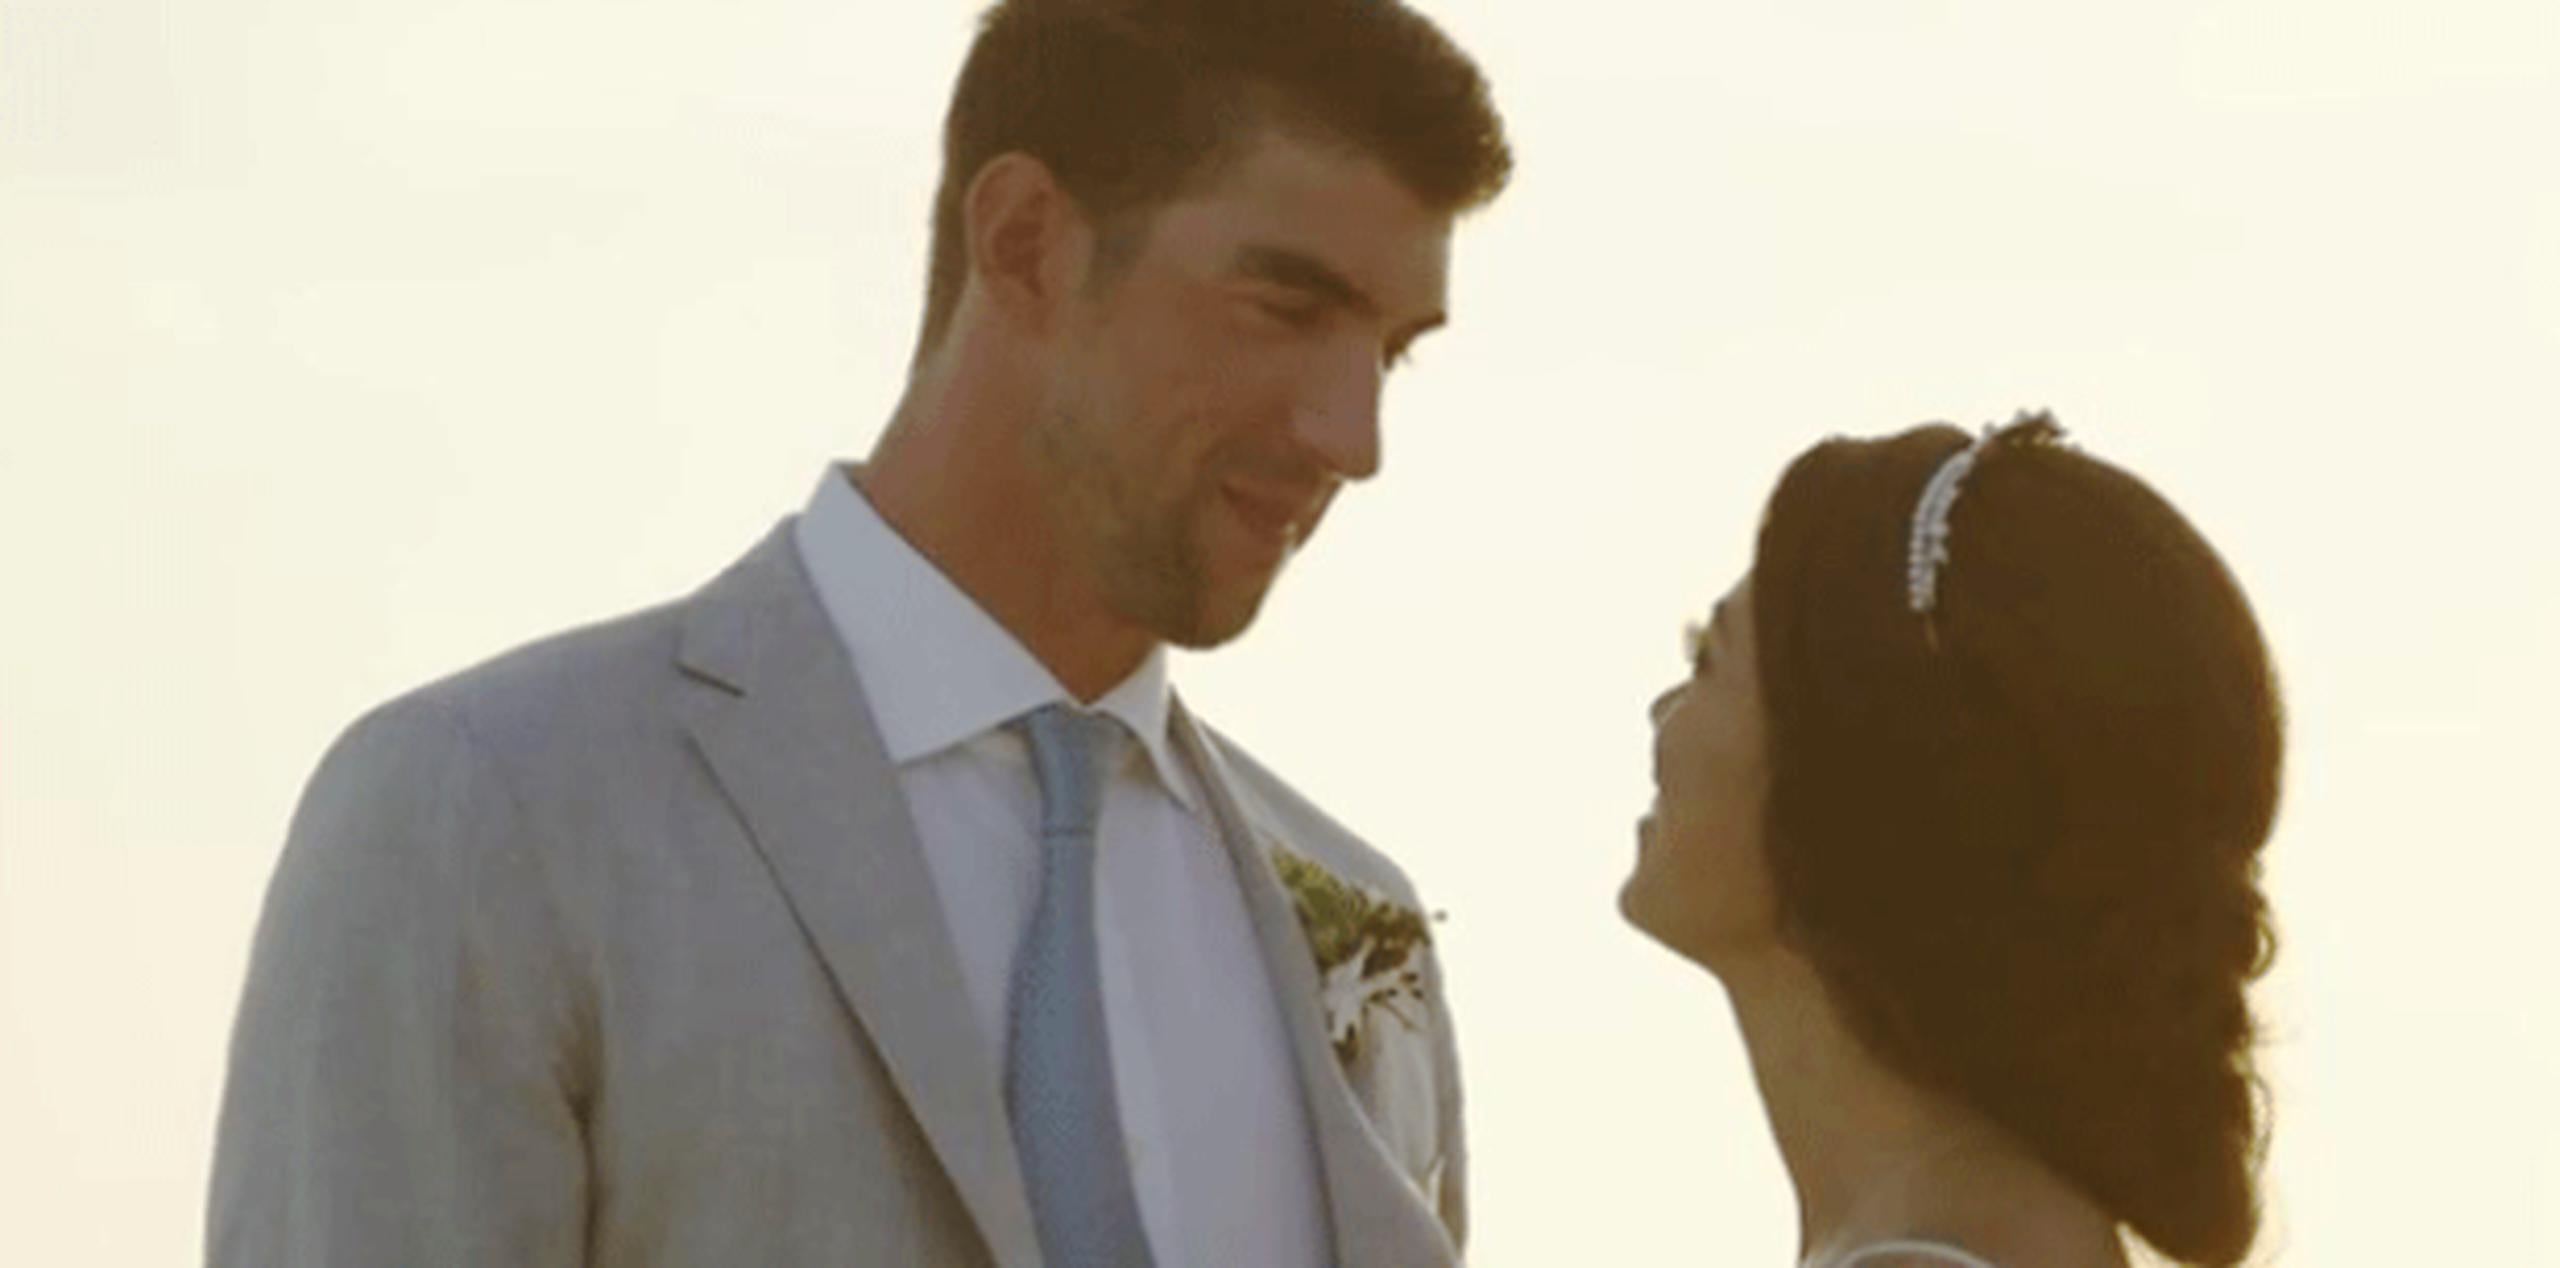 El canal de YouTube de la compañía Brides, organizadores de las ceremonias de las famosas, subió el vídeo oficial que evidencia lo romántico que fue para Phelps y Johnson su unión ante el mundo. (Captura / Brides)